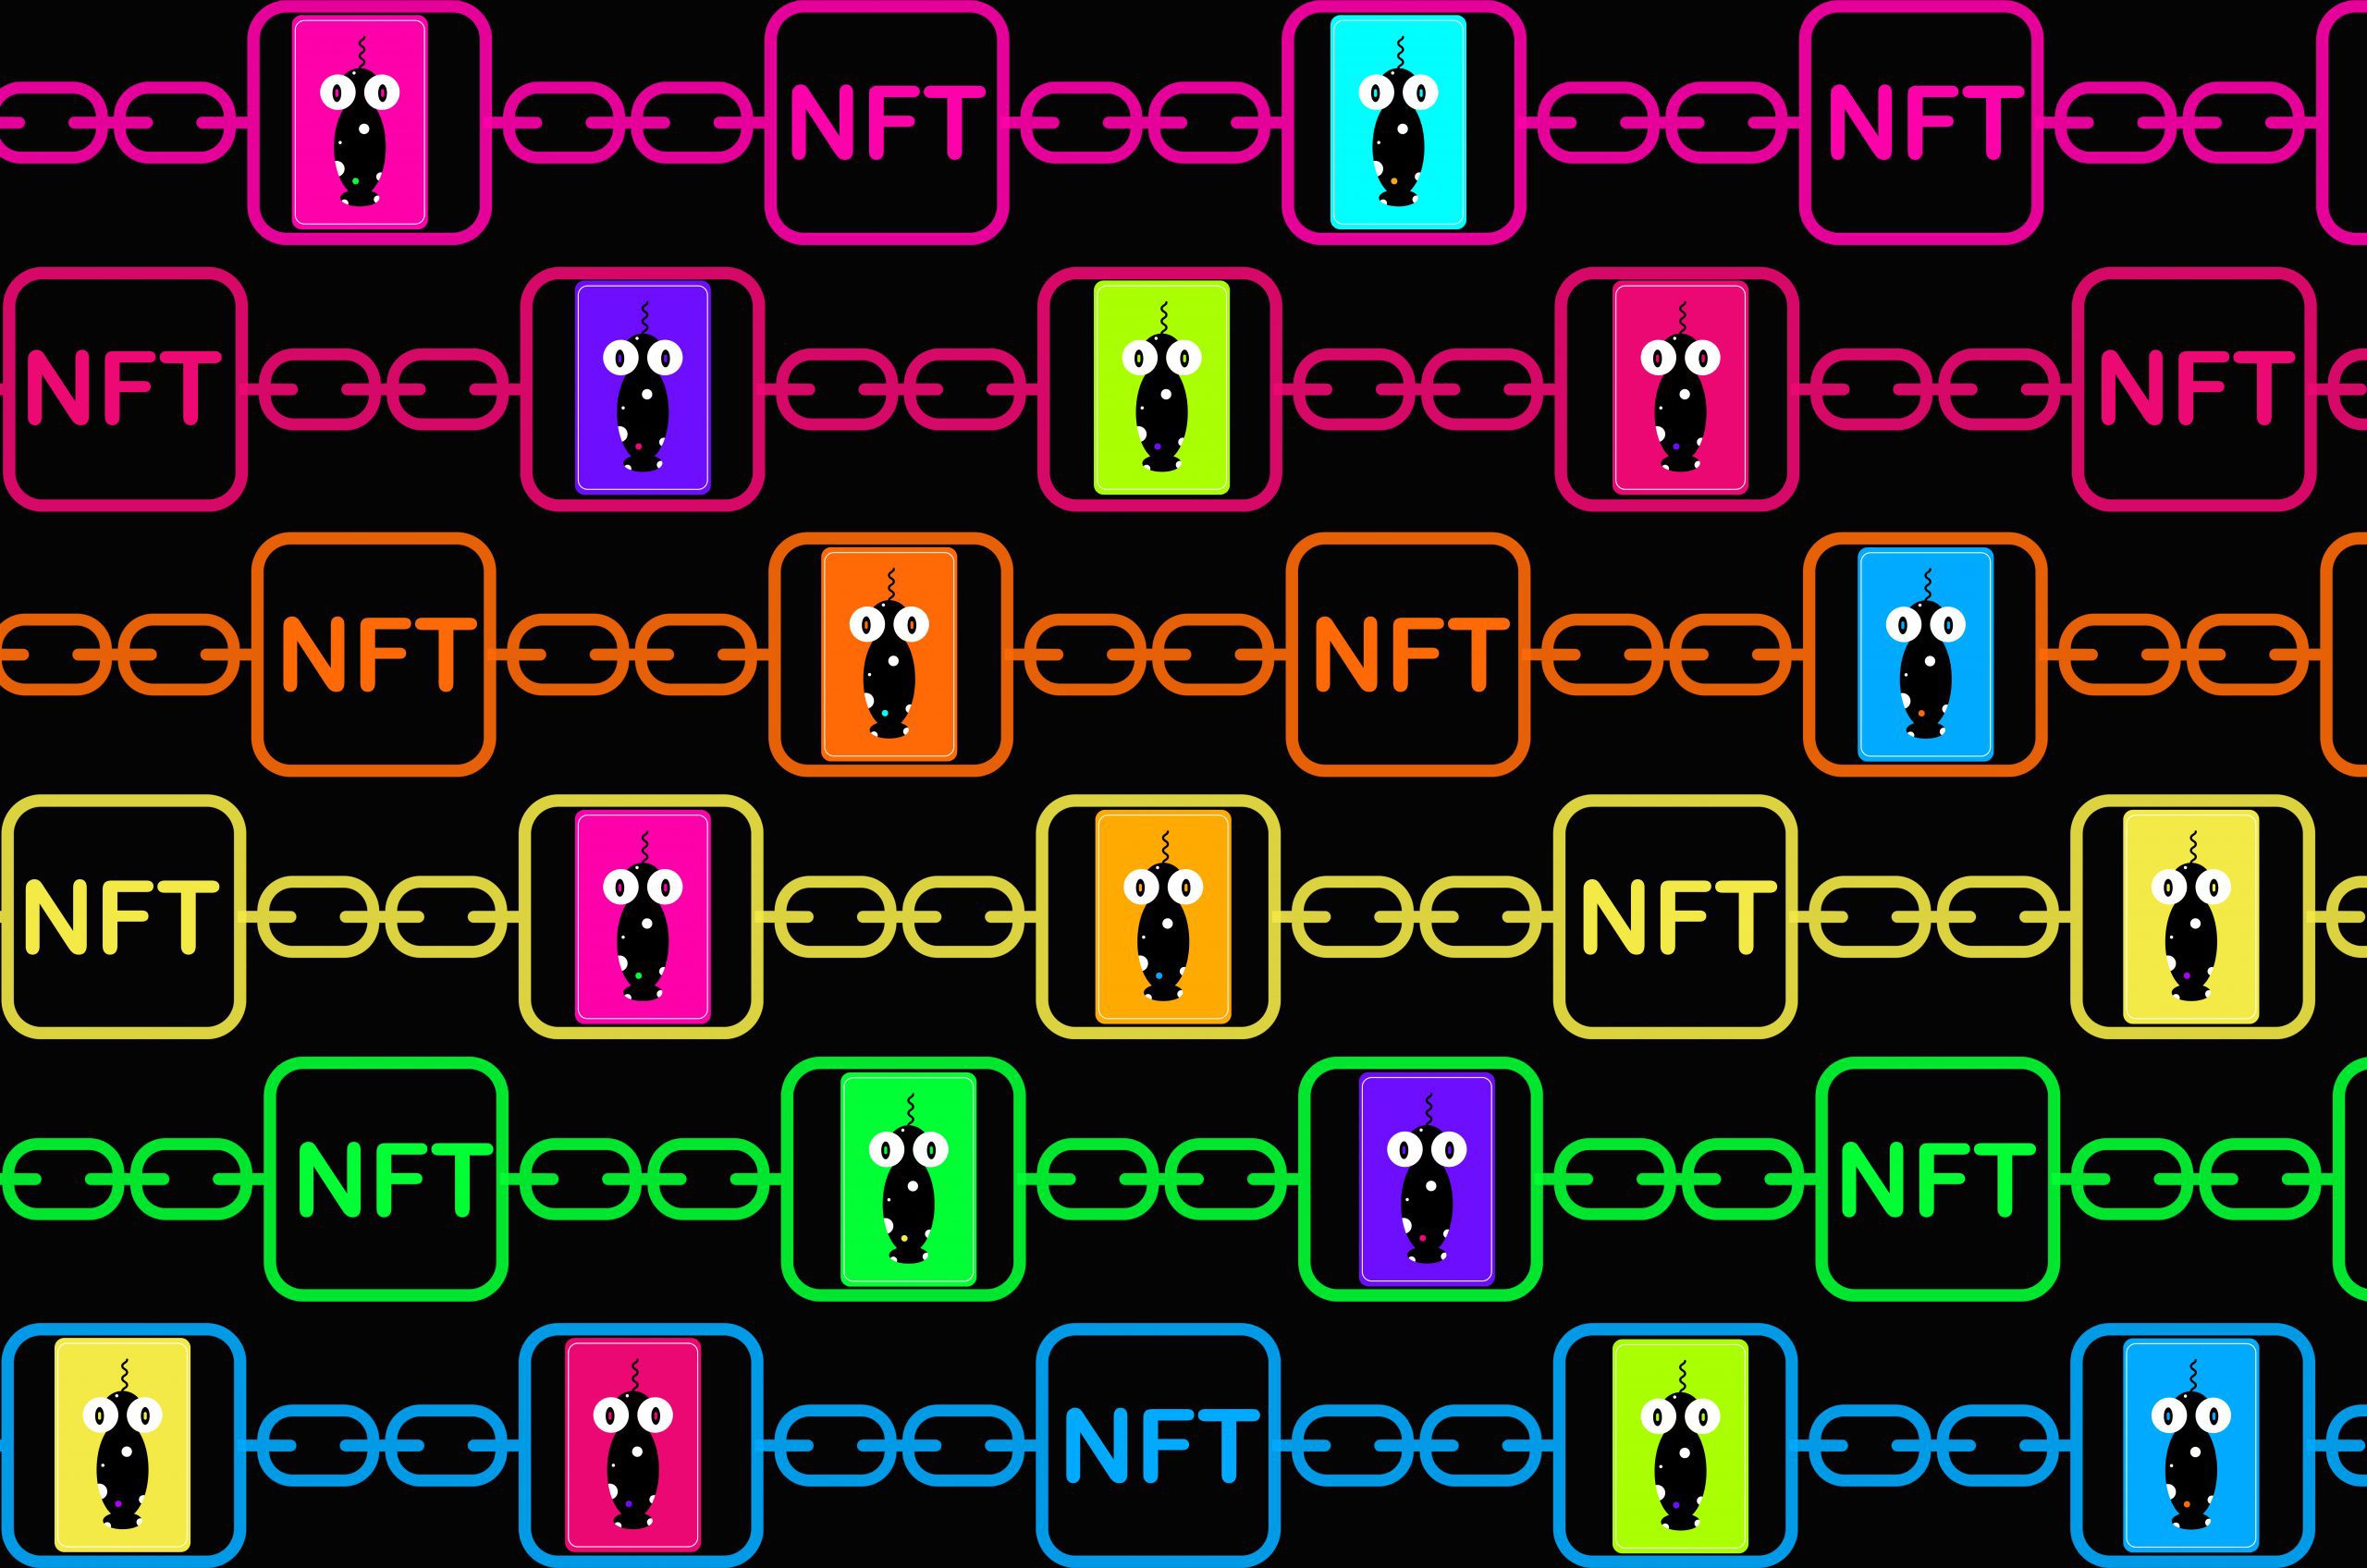 这张图片展示了多个彩色方框内的NFT字样，方框链接成链条，内有不同颜色的怪兽图案，背景为黑色。